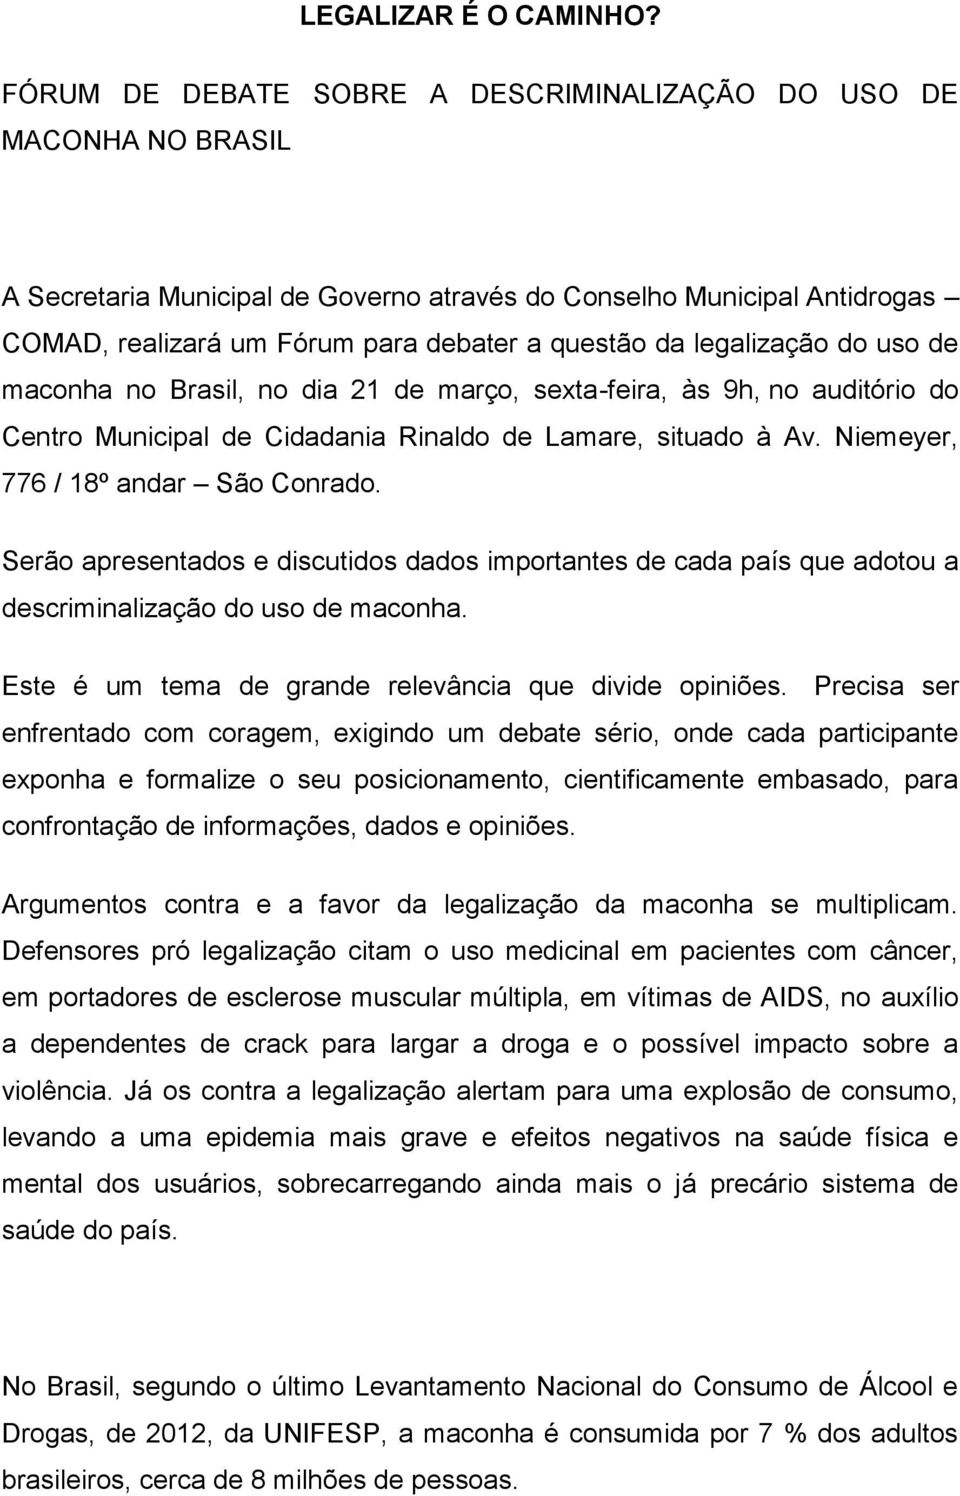 legalização do uso de maconha no Brasil, no dia 21 de março, sexta-feira, às 9h, no auditório do Centro Municipal de Cidadania Rinaldo de Lamare, situado à Av. Niemeyer, 776 / 18º andar São Conrado.